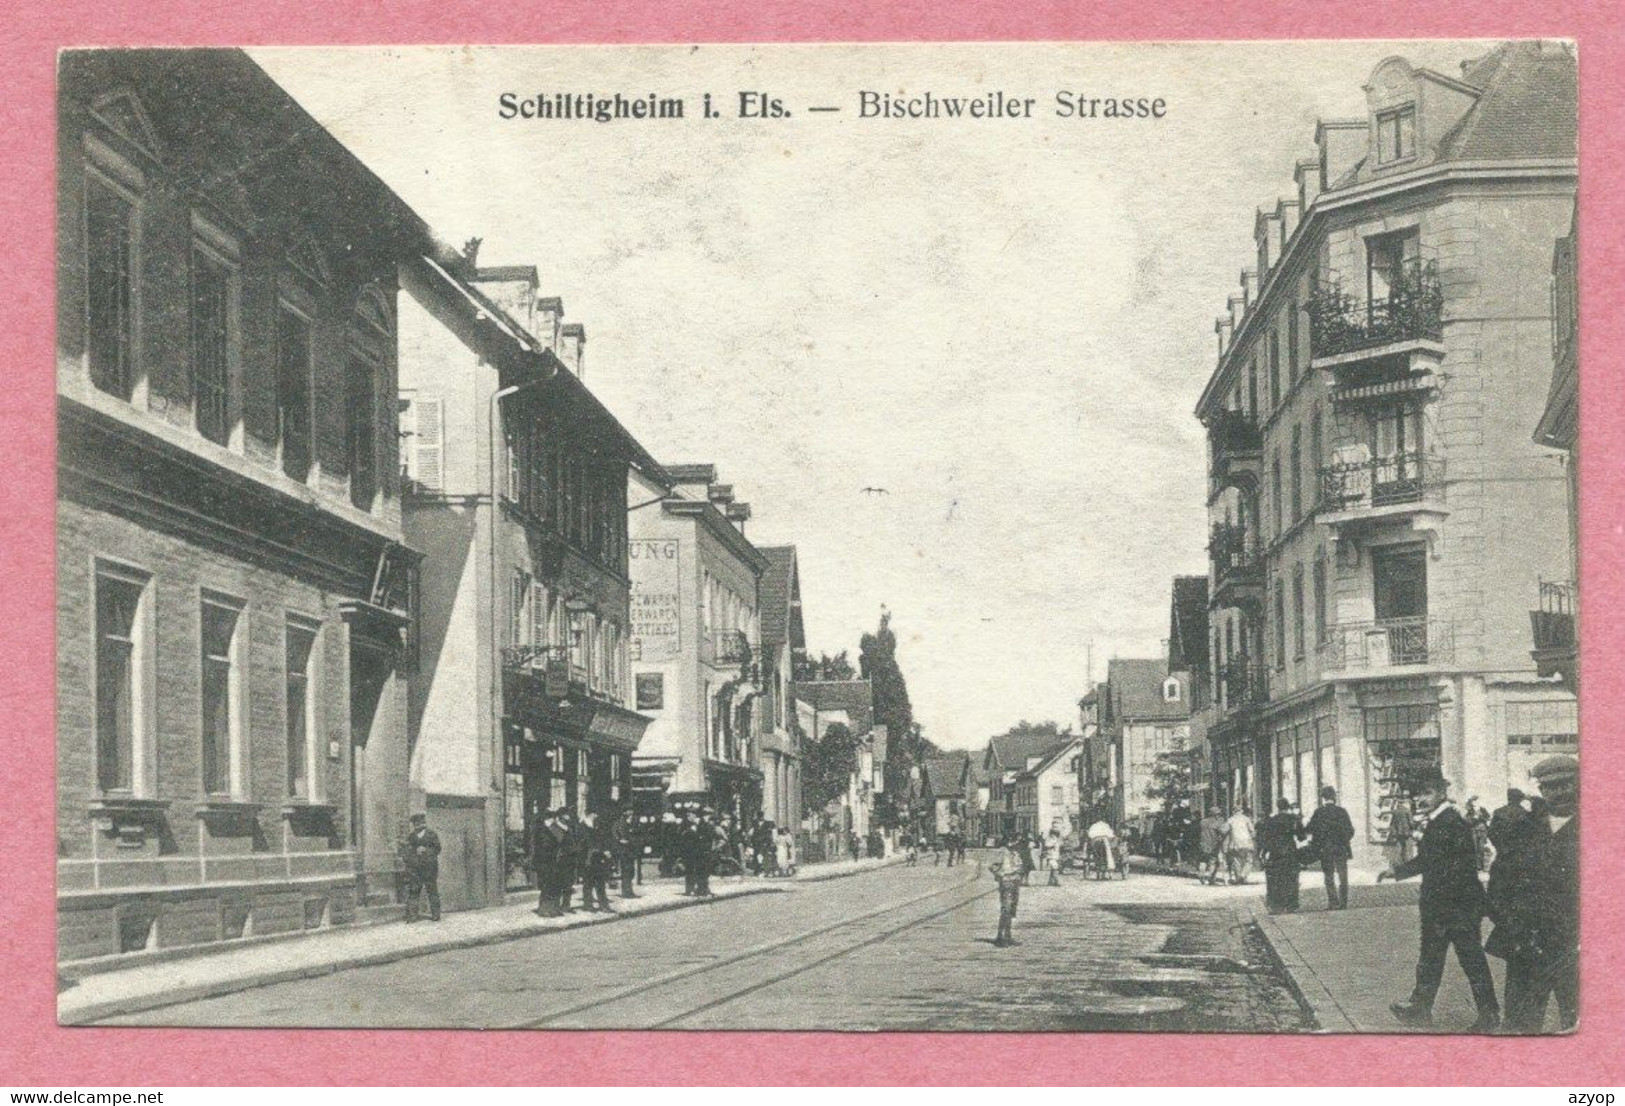 67 - SCHILTIGHEIM - Bischweiler Strasse - Feldpost - Schiltigheim